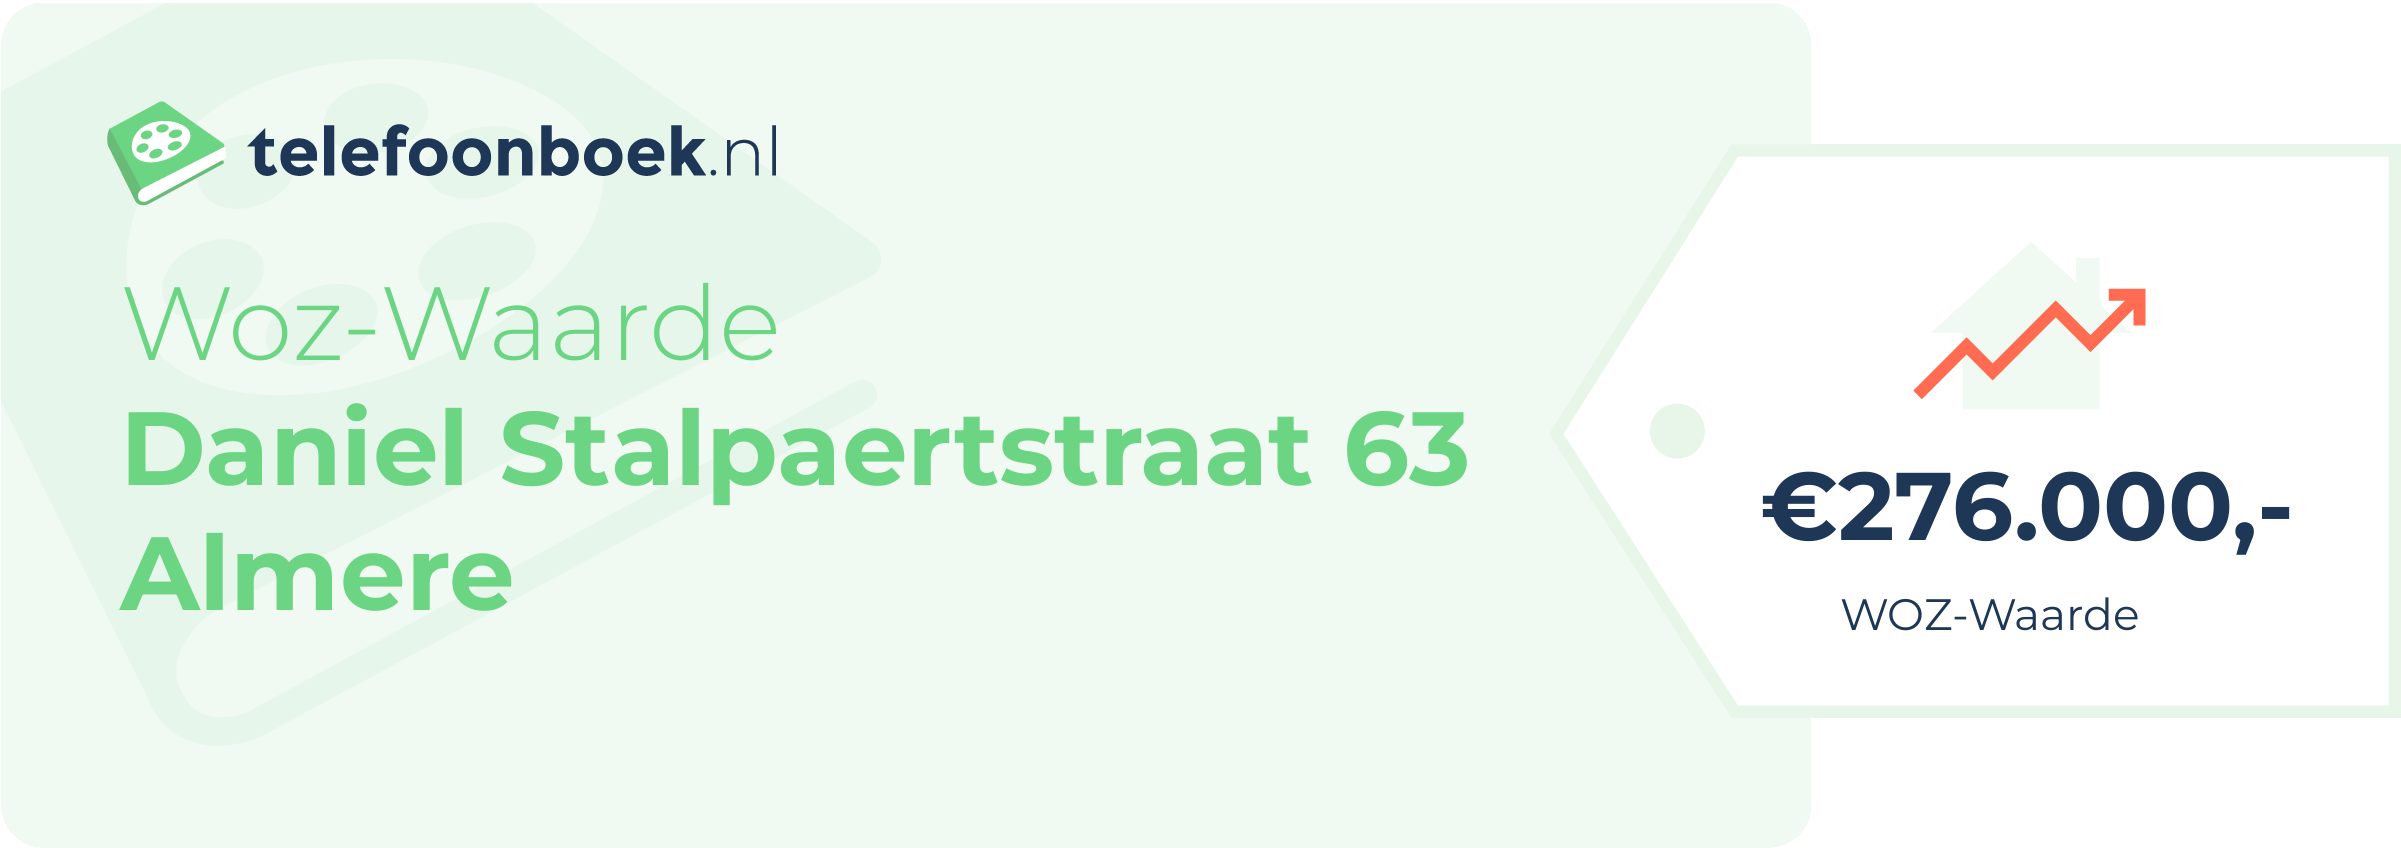 WOZ-waarde Daniel Stalpaertstraat 63 Almere